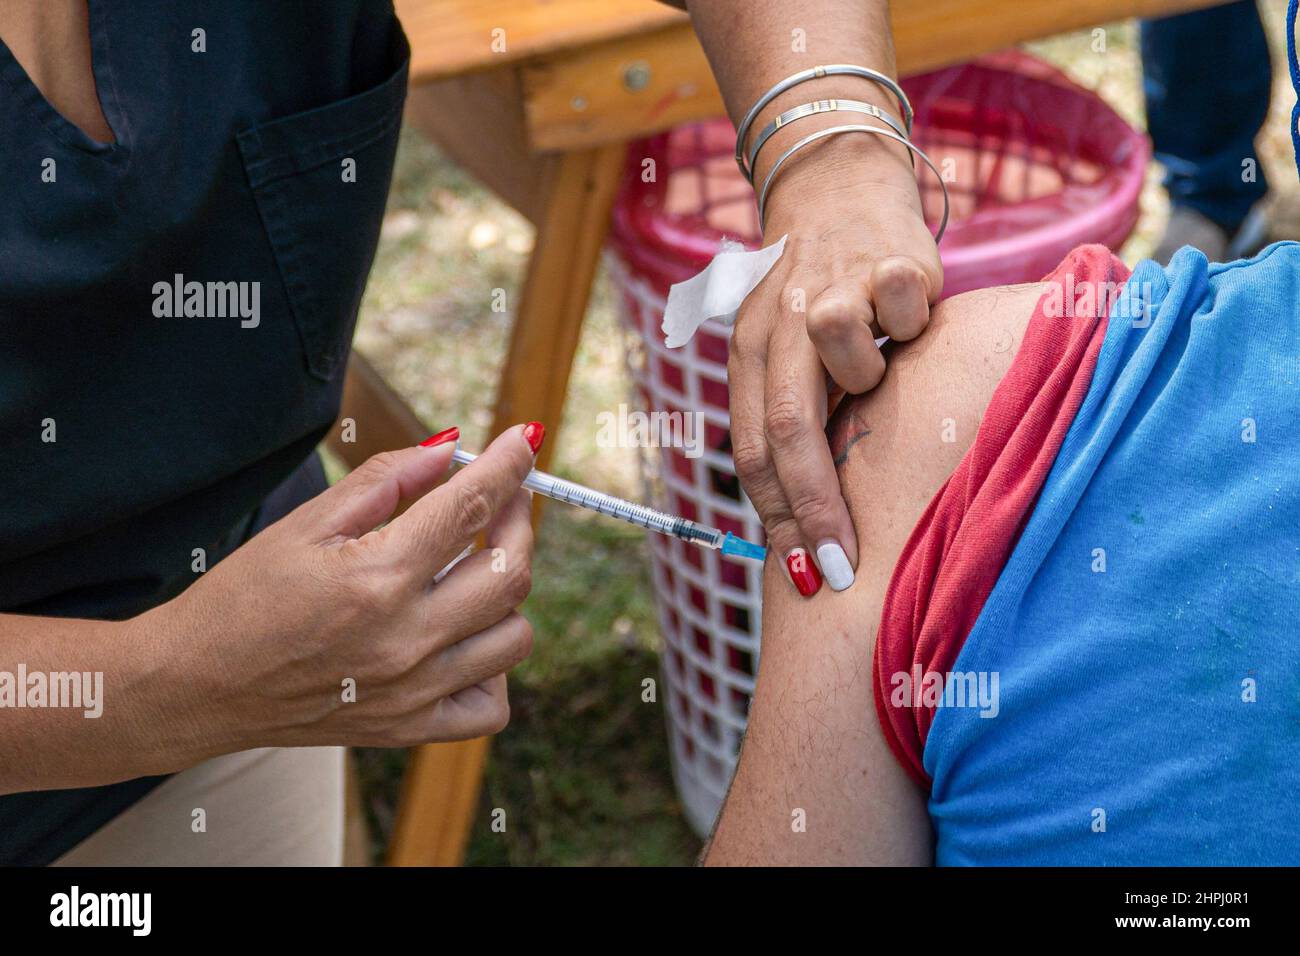 Firmat, Santa Fe, Argentine. 17th févr. 2022. Un agent de santé administre un jab de rappel Covid-19 à une femme dans un centre de vaccination.la province de Santa Fe en Argentine a commencé à appliquer une troisième dose du vaccin COVID-19 à tout citoyen âgé de plus de 18 ans sans avoir au programmer. Le vaccin de choix pour ce rappel est le Pfizer/Biontech. (Image de crédit : © Patricio Murphy/SOPA Images via ZUMA Press Wire) Banque D'Images